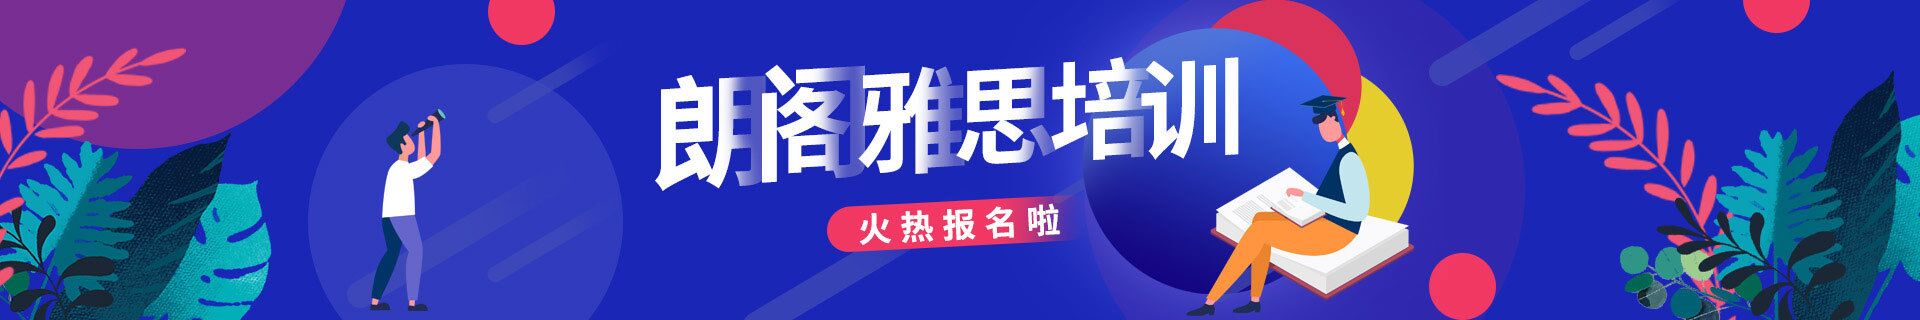 上海静安区愚园路三立精选教育培训机构